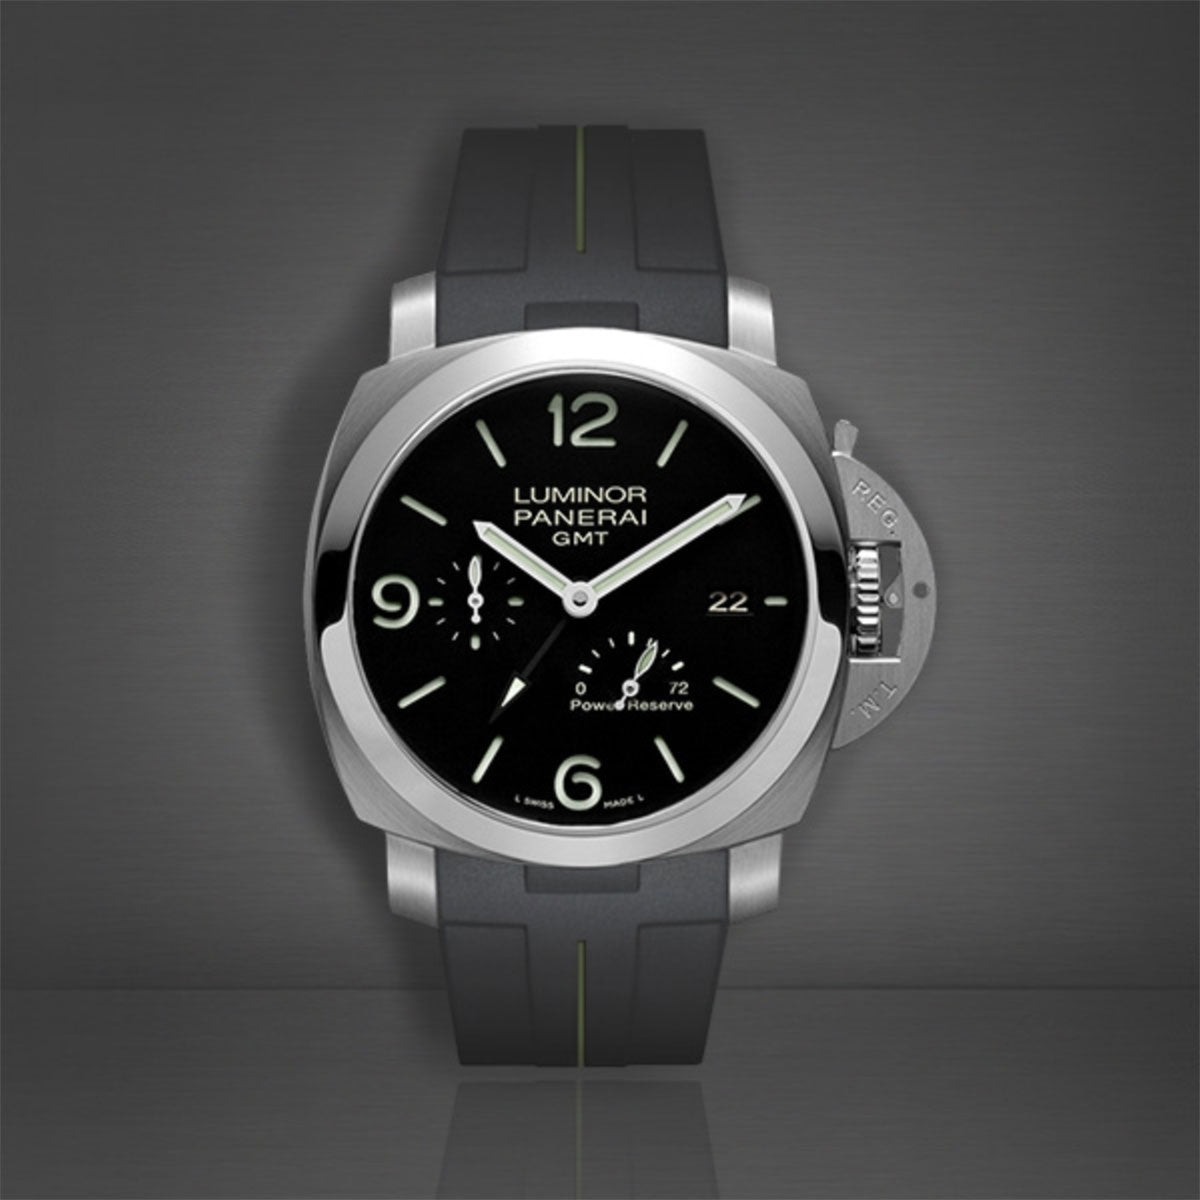 Panerai - Rubber B - Bracelet caoutchouc pour Luminor 1950 44mm (Type II) - watch band leather strap - ABP Concept -